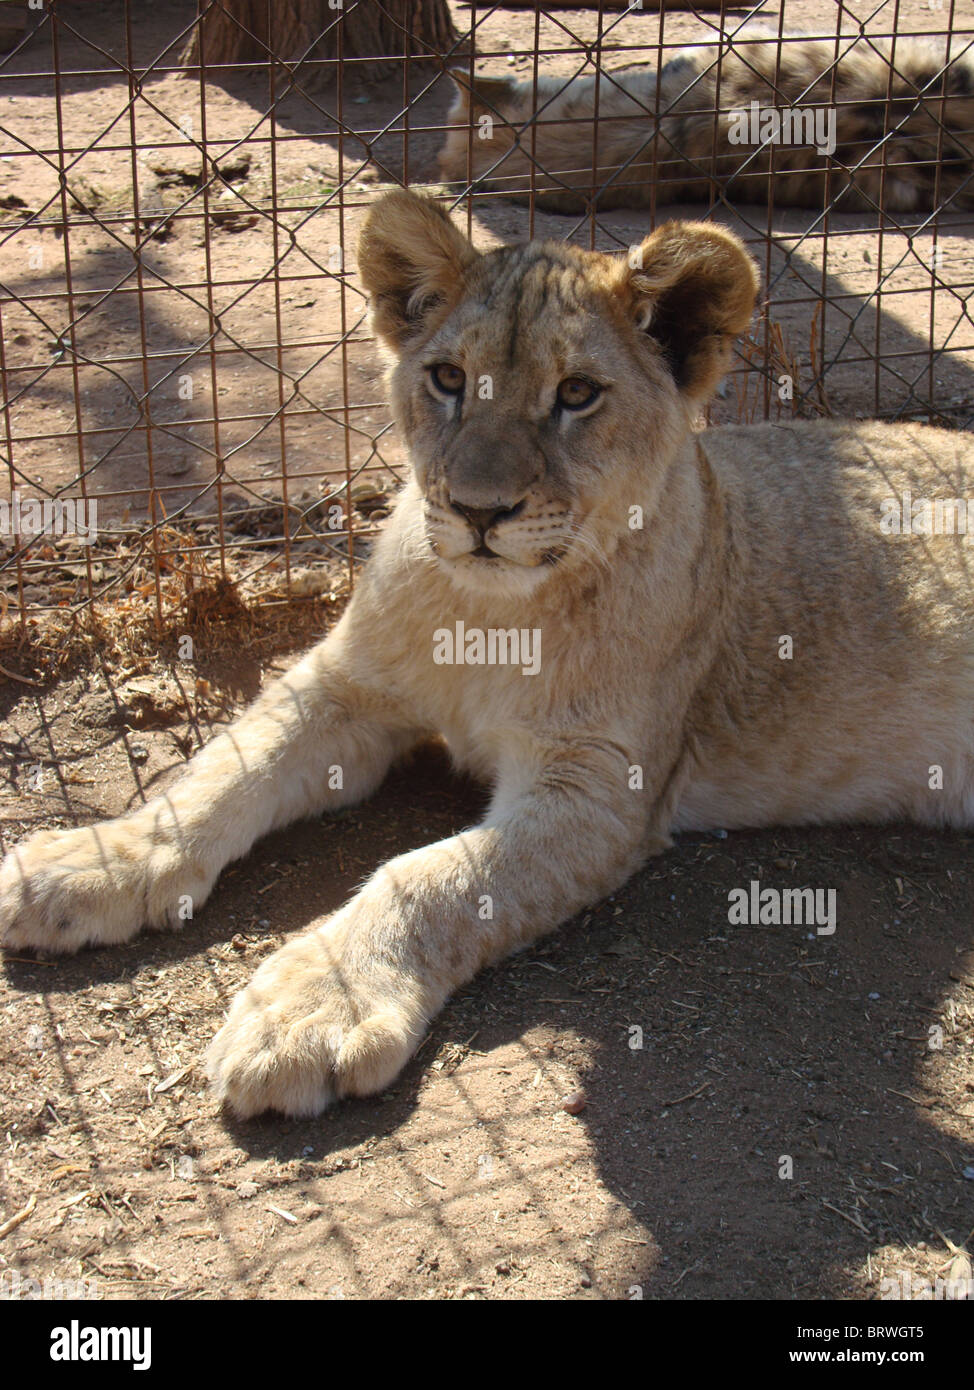 Lion cub laid down close up Stock Photo